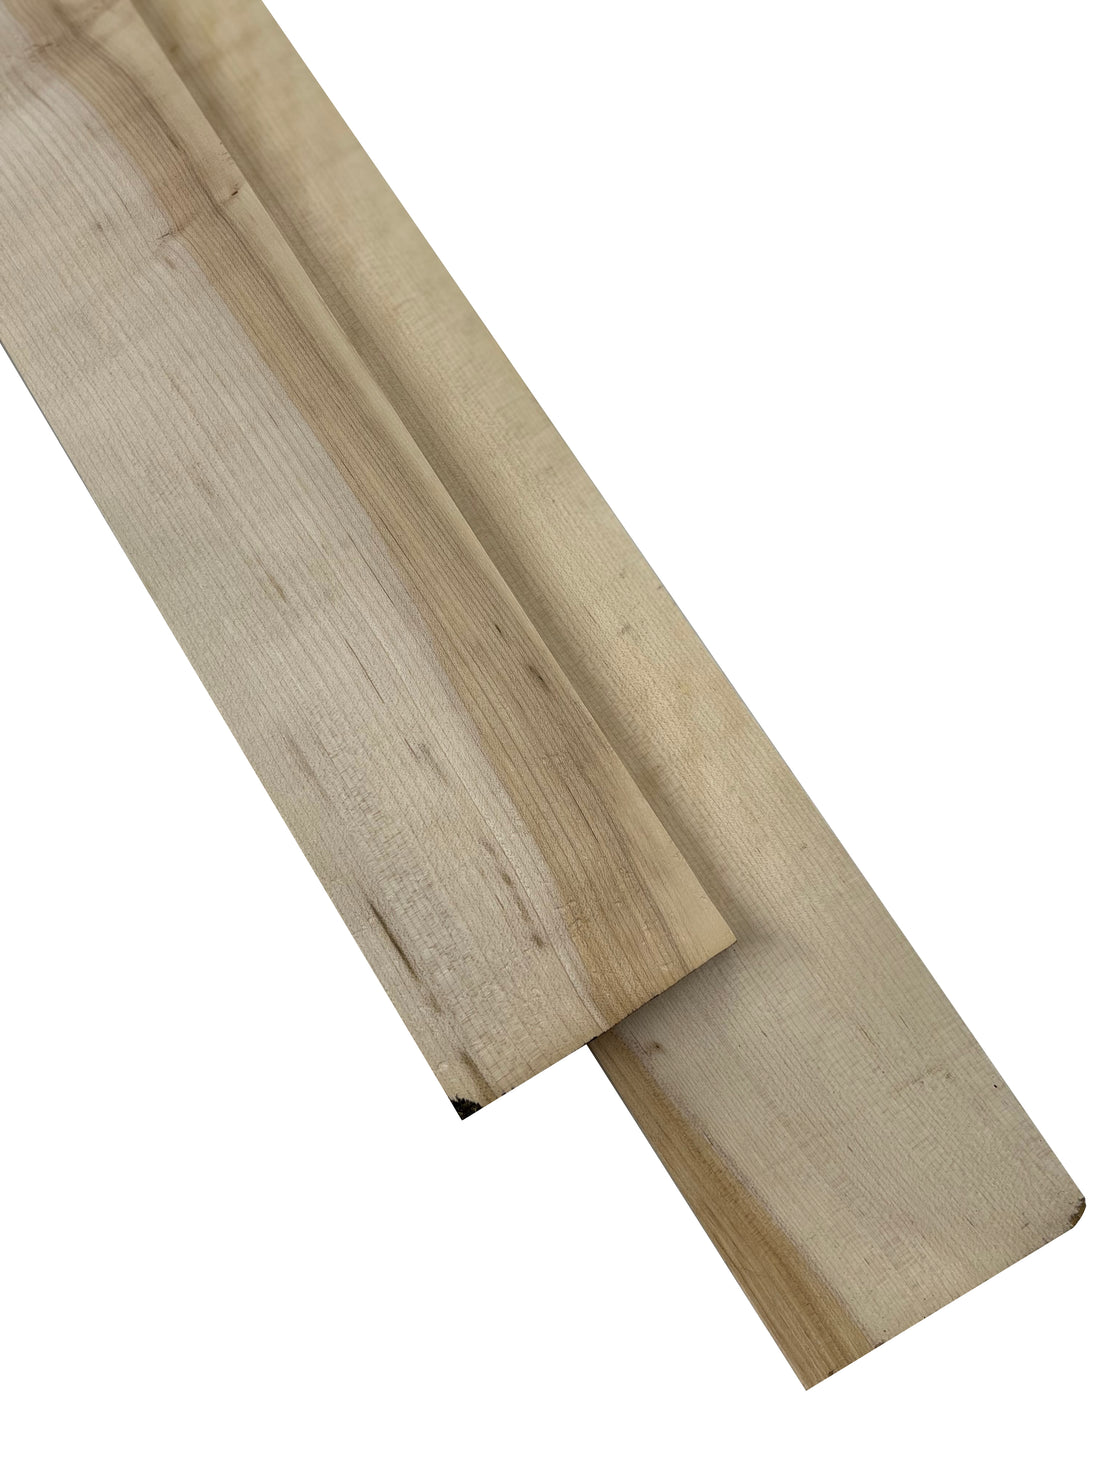 Premium American Hardwood 12/4 Hard Maple Lumber - Exotic Wood Zone - Buy online Across USA 